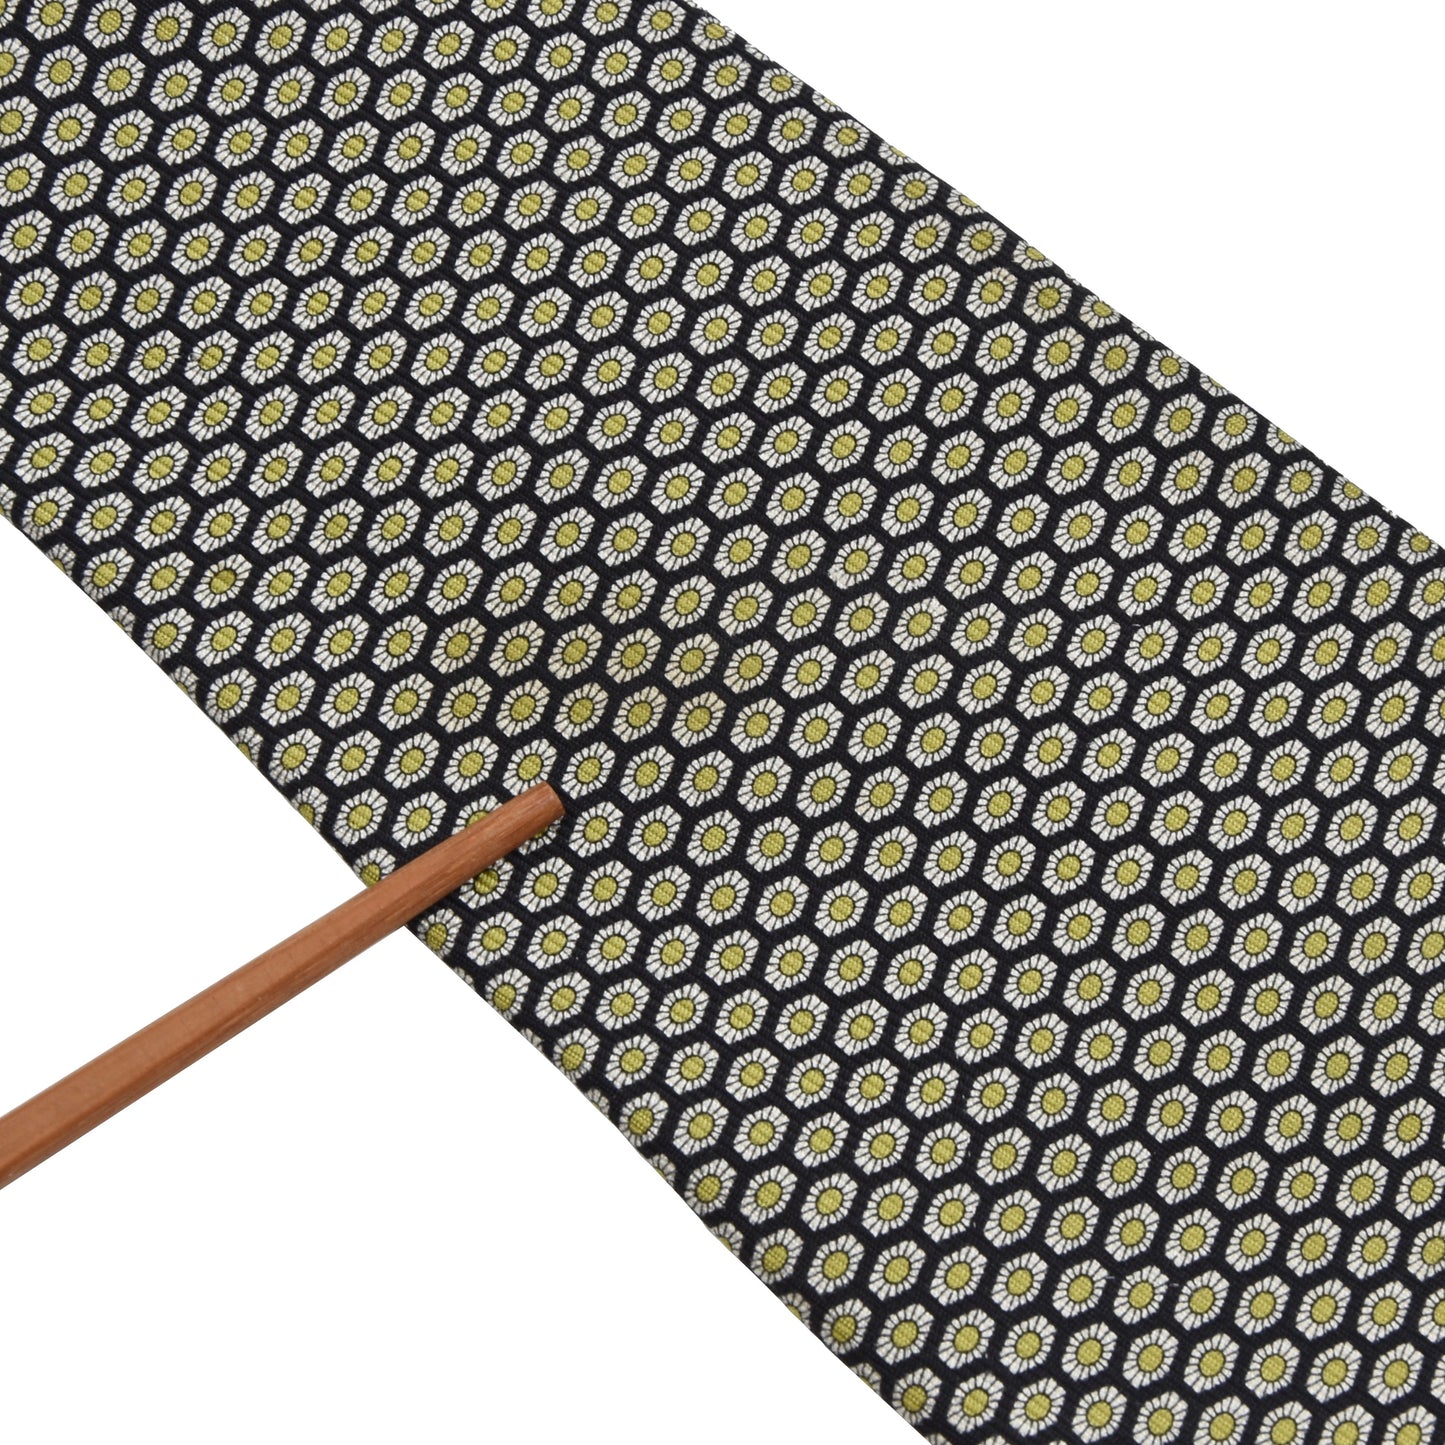 Kiton Napoli 7 Fold Silk Tie - Flowers